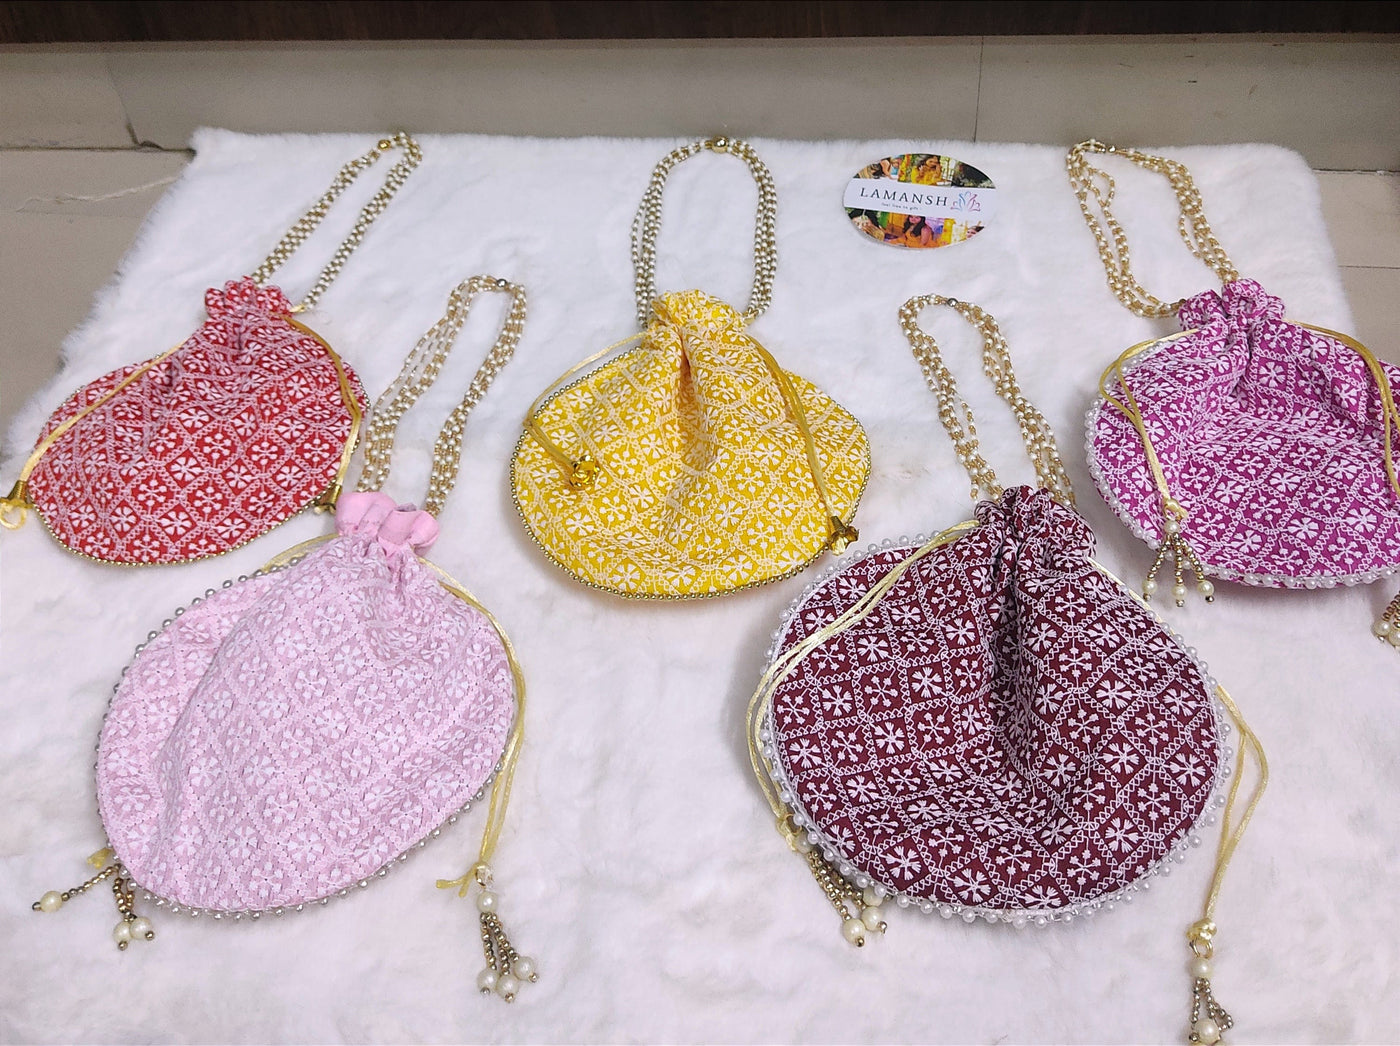 LAMANSH ® Women's Potli Bag LAMANSH® (Size - 6*8 inch) Lucknavi Chikankari work potli bags for gifting / Designer Potli bags for indian wedding ceremonies